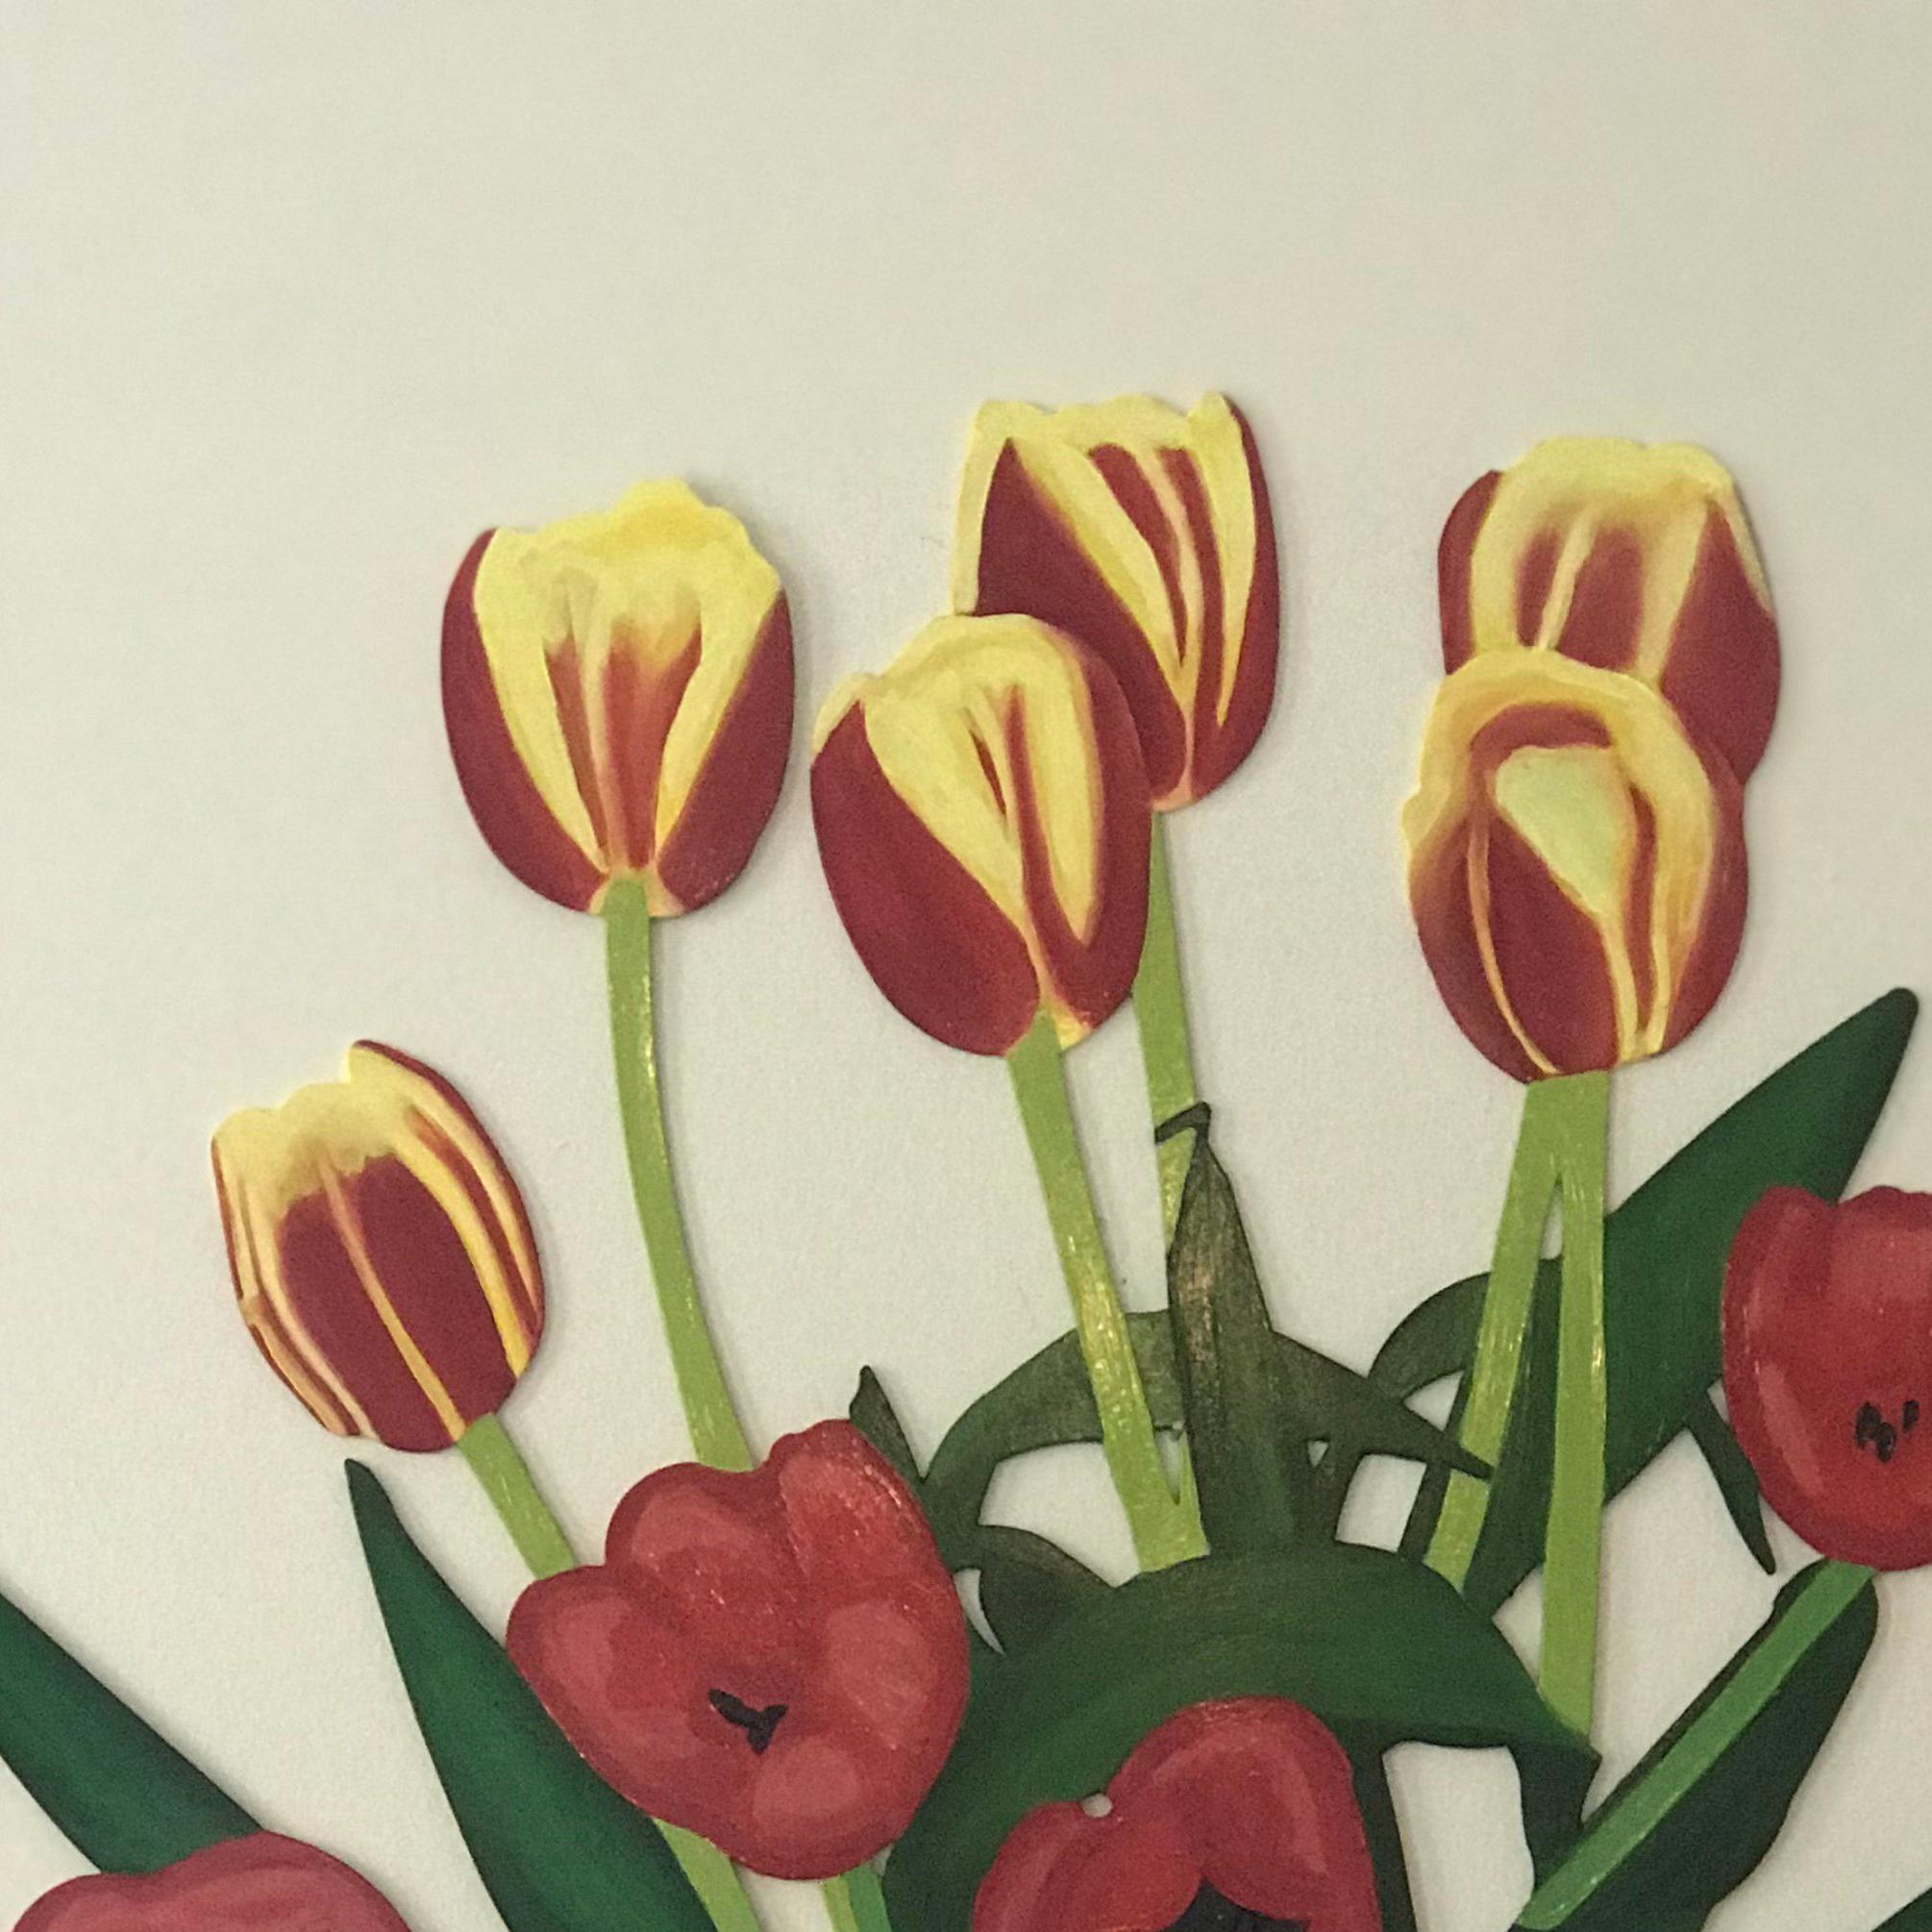 Douze tulipes SM, sculpture murale peinte à l'huile rouge, jaune, bleue - Sculpture de Debbie Carfagno